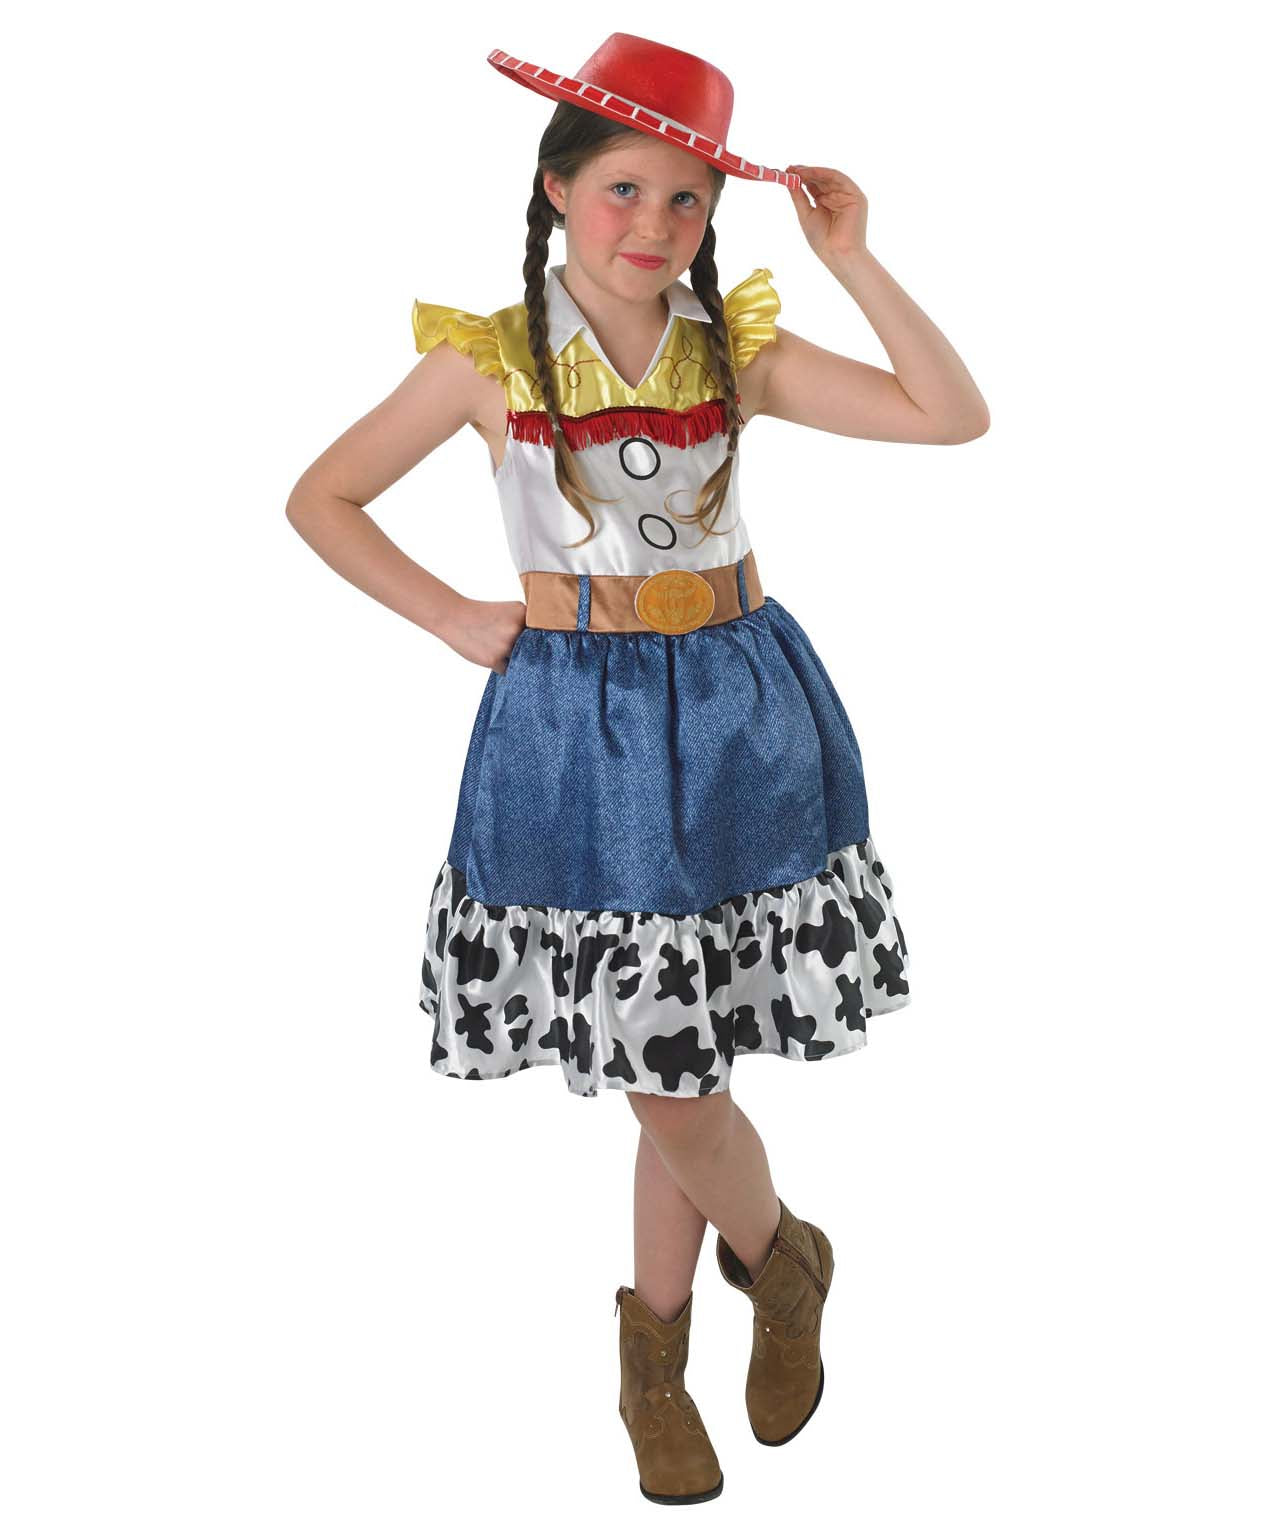 Toy Story Jessie Dress